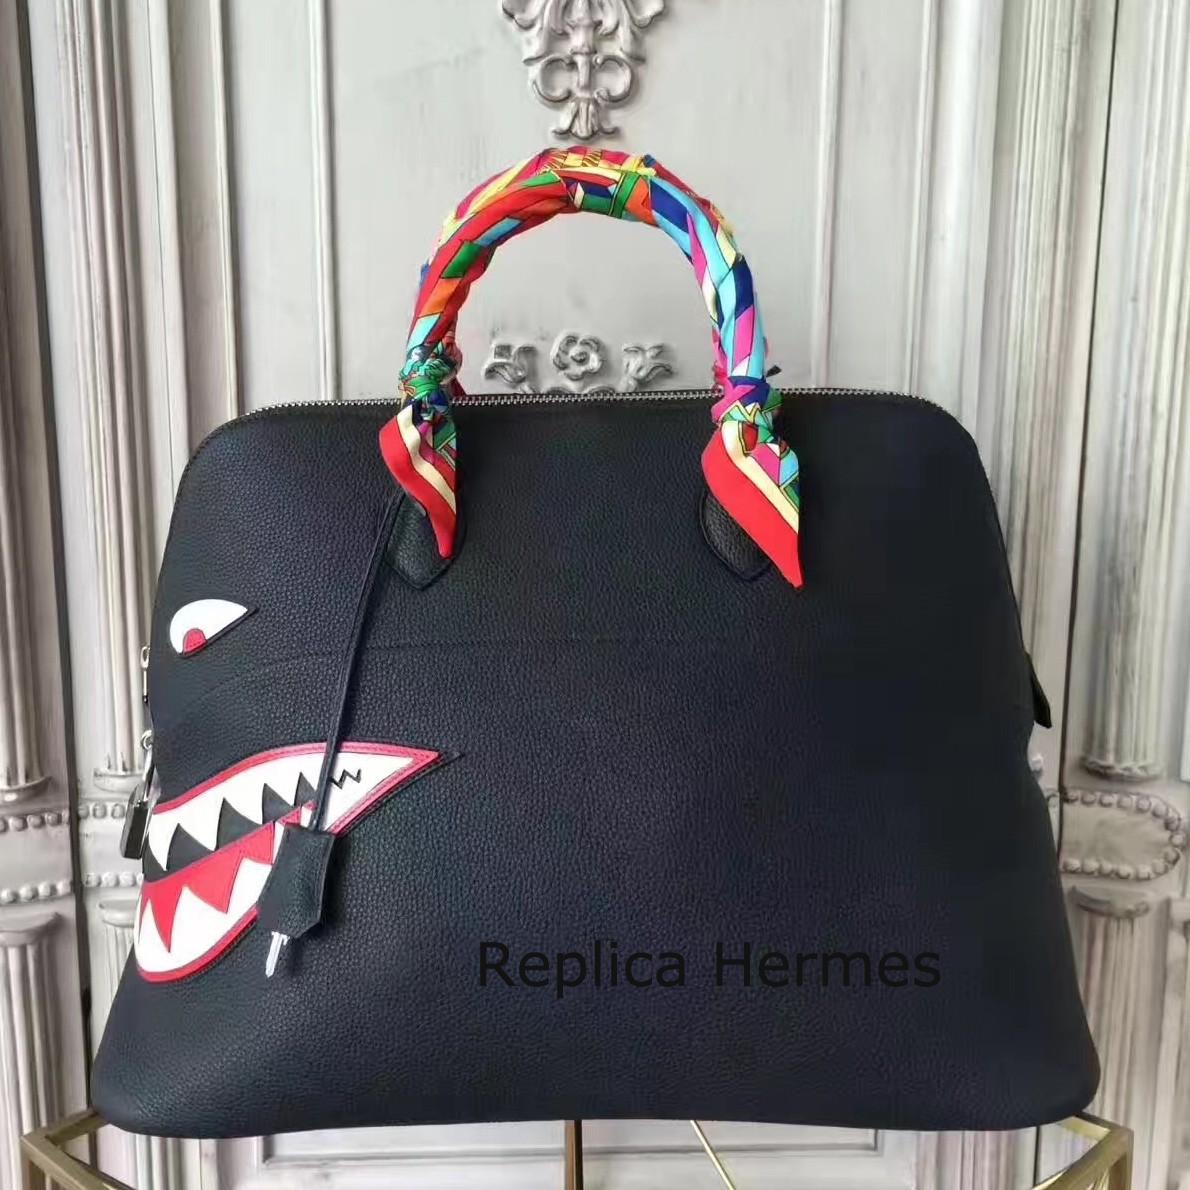 Luxury Replica Hermes Shark Bolide 45cm Bag In Black Calfskin